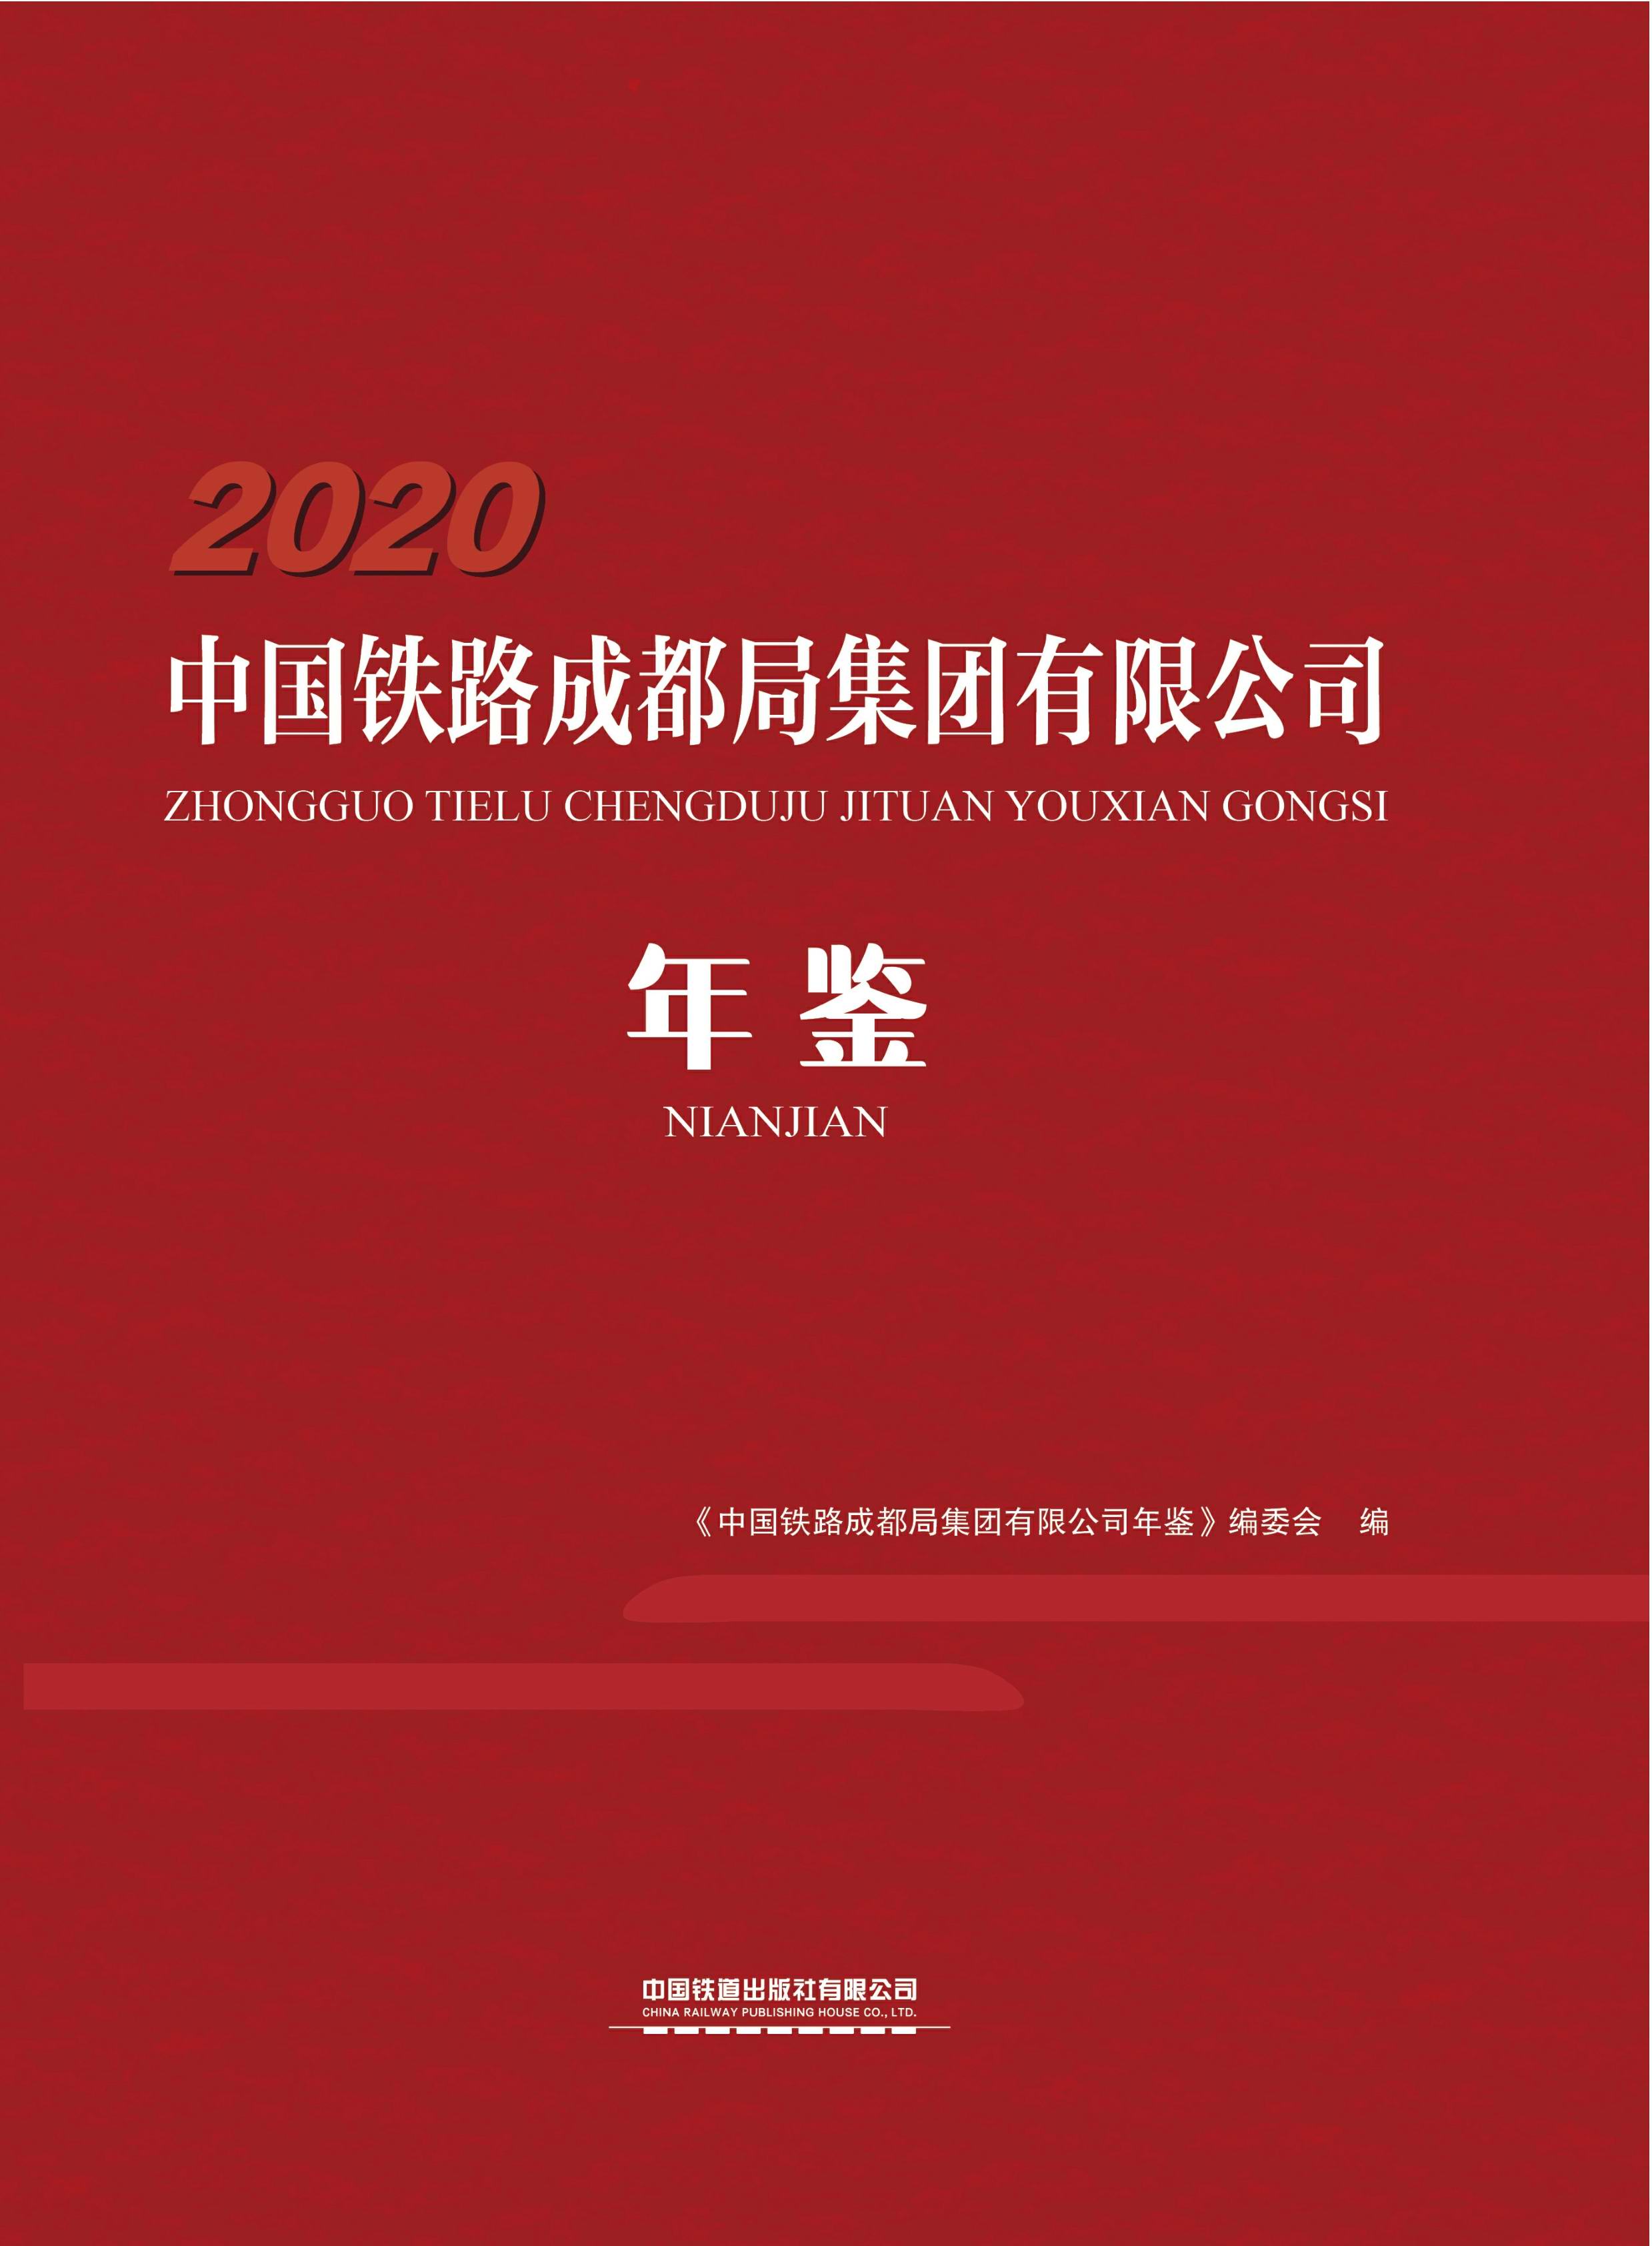 中国铁路成都局集团有限公司年鉴2020